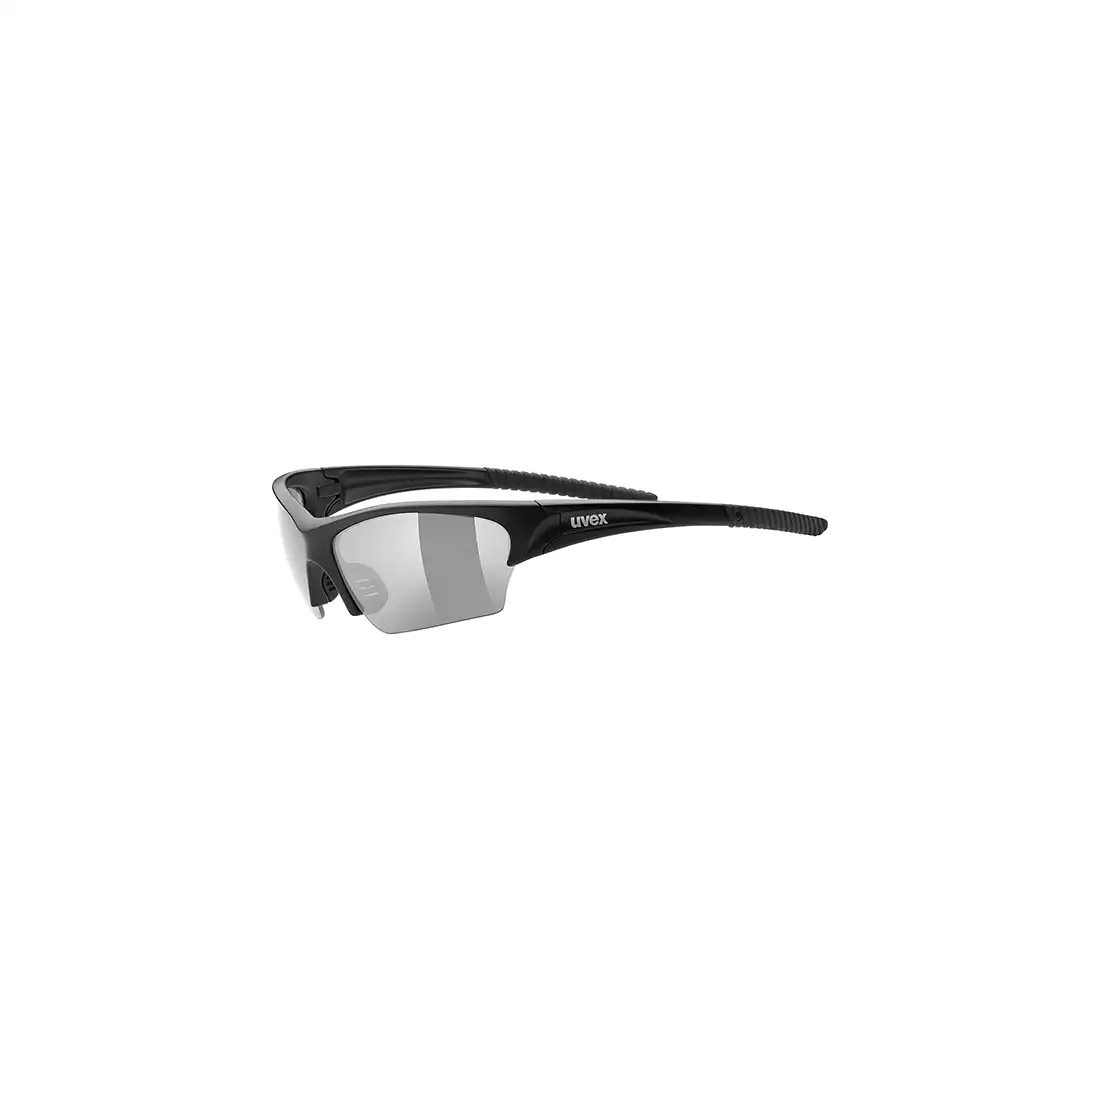 Okulary rowerowe / sportowe Uvex Sunsation 53/0/606/2210/UNI SS19